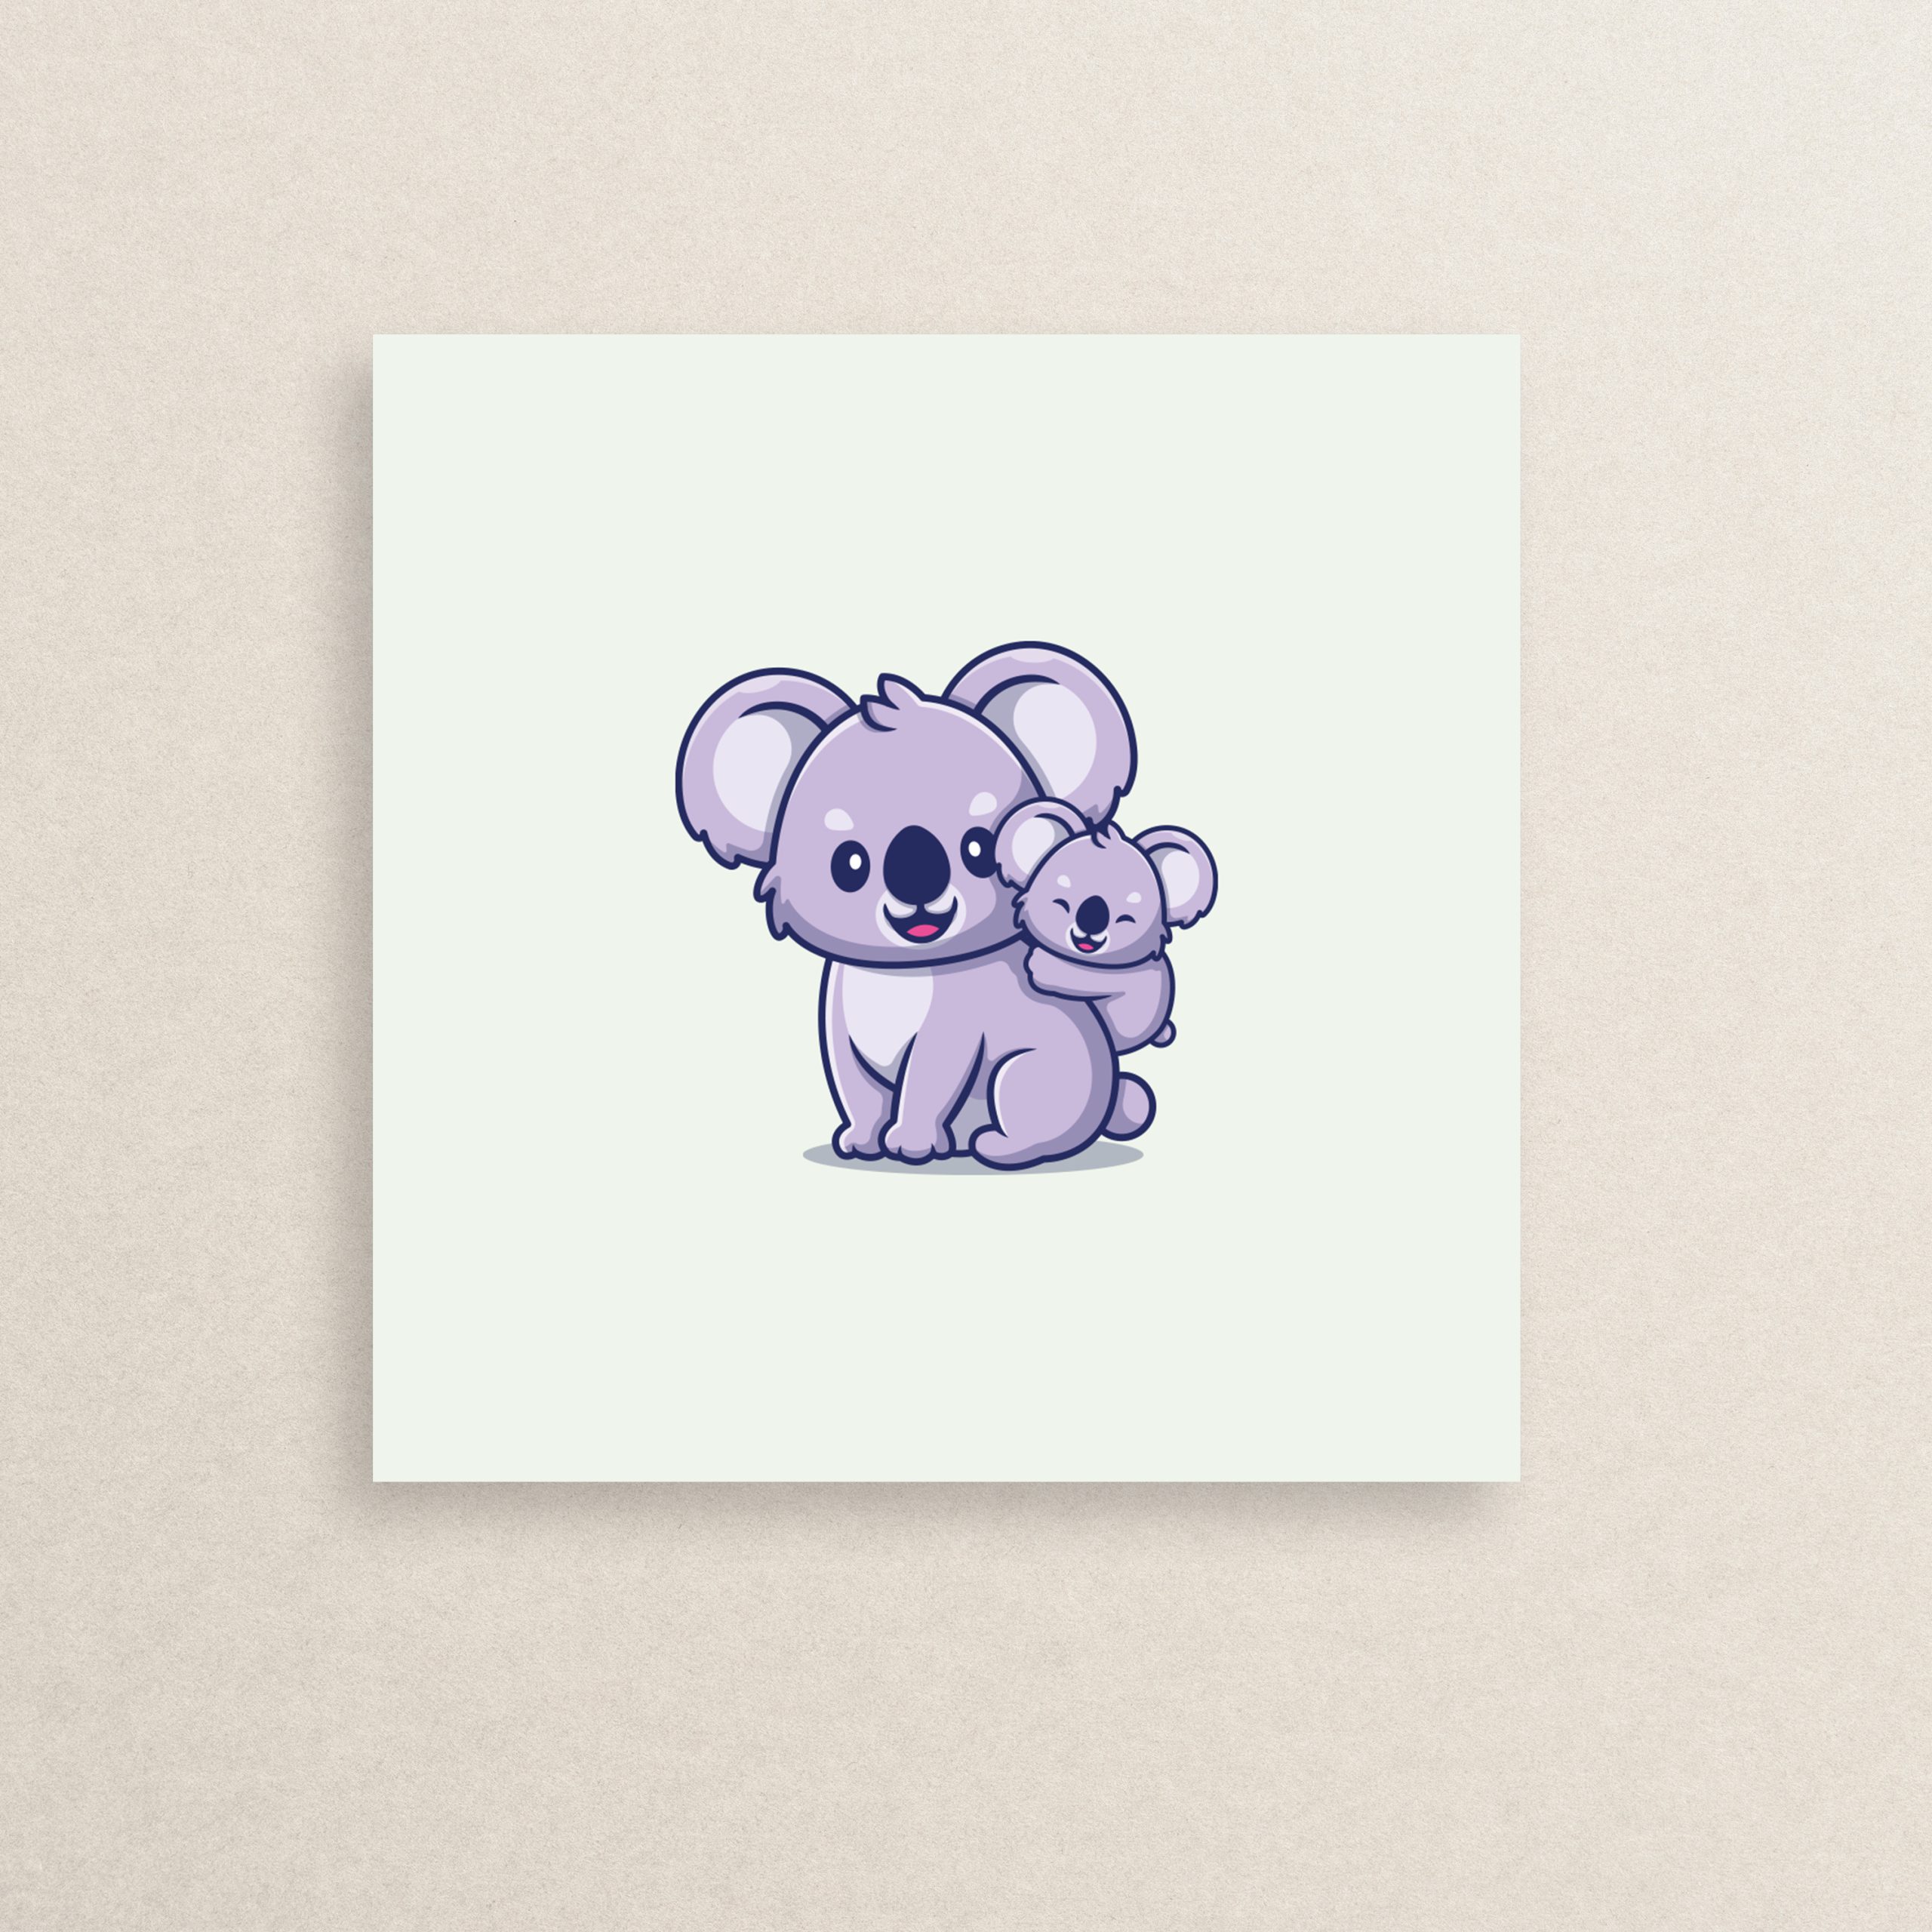 استیکر کوالا گوگولی 01 | The cute Koala sticker 01 استیکر کوالا گوگولی 01 | The cute Koala sticker 01